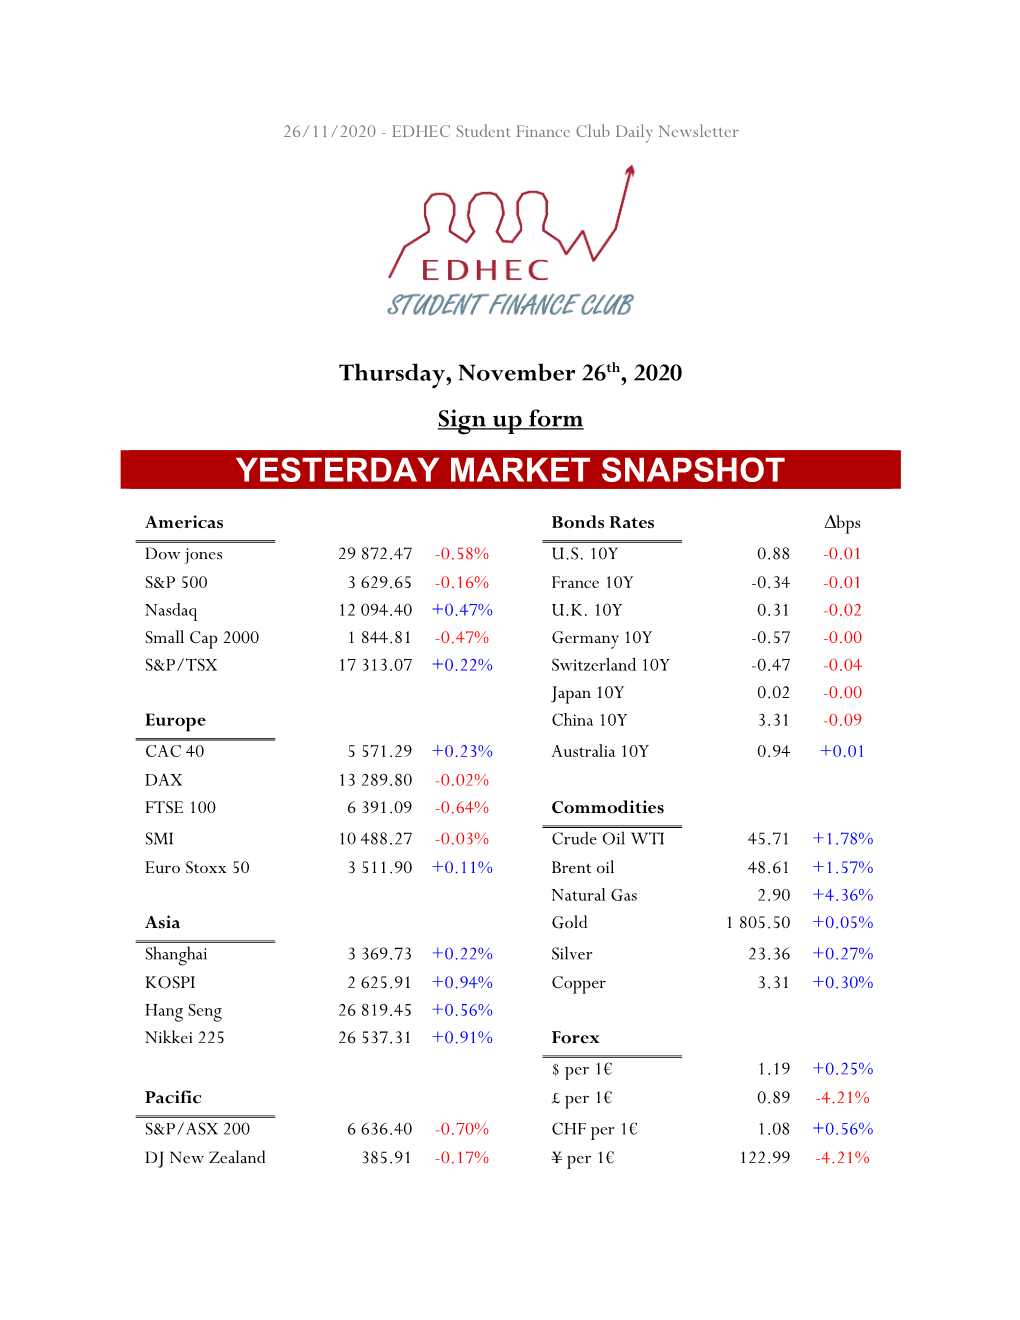 Yesterday Market Snapshot